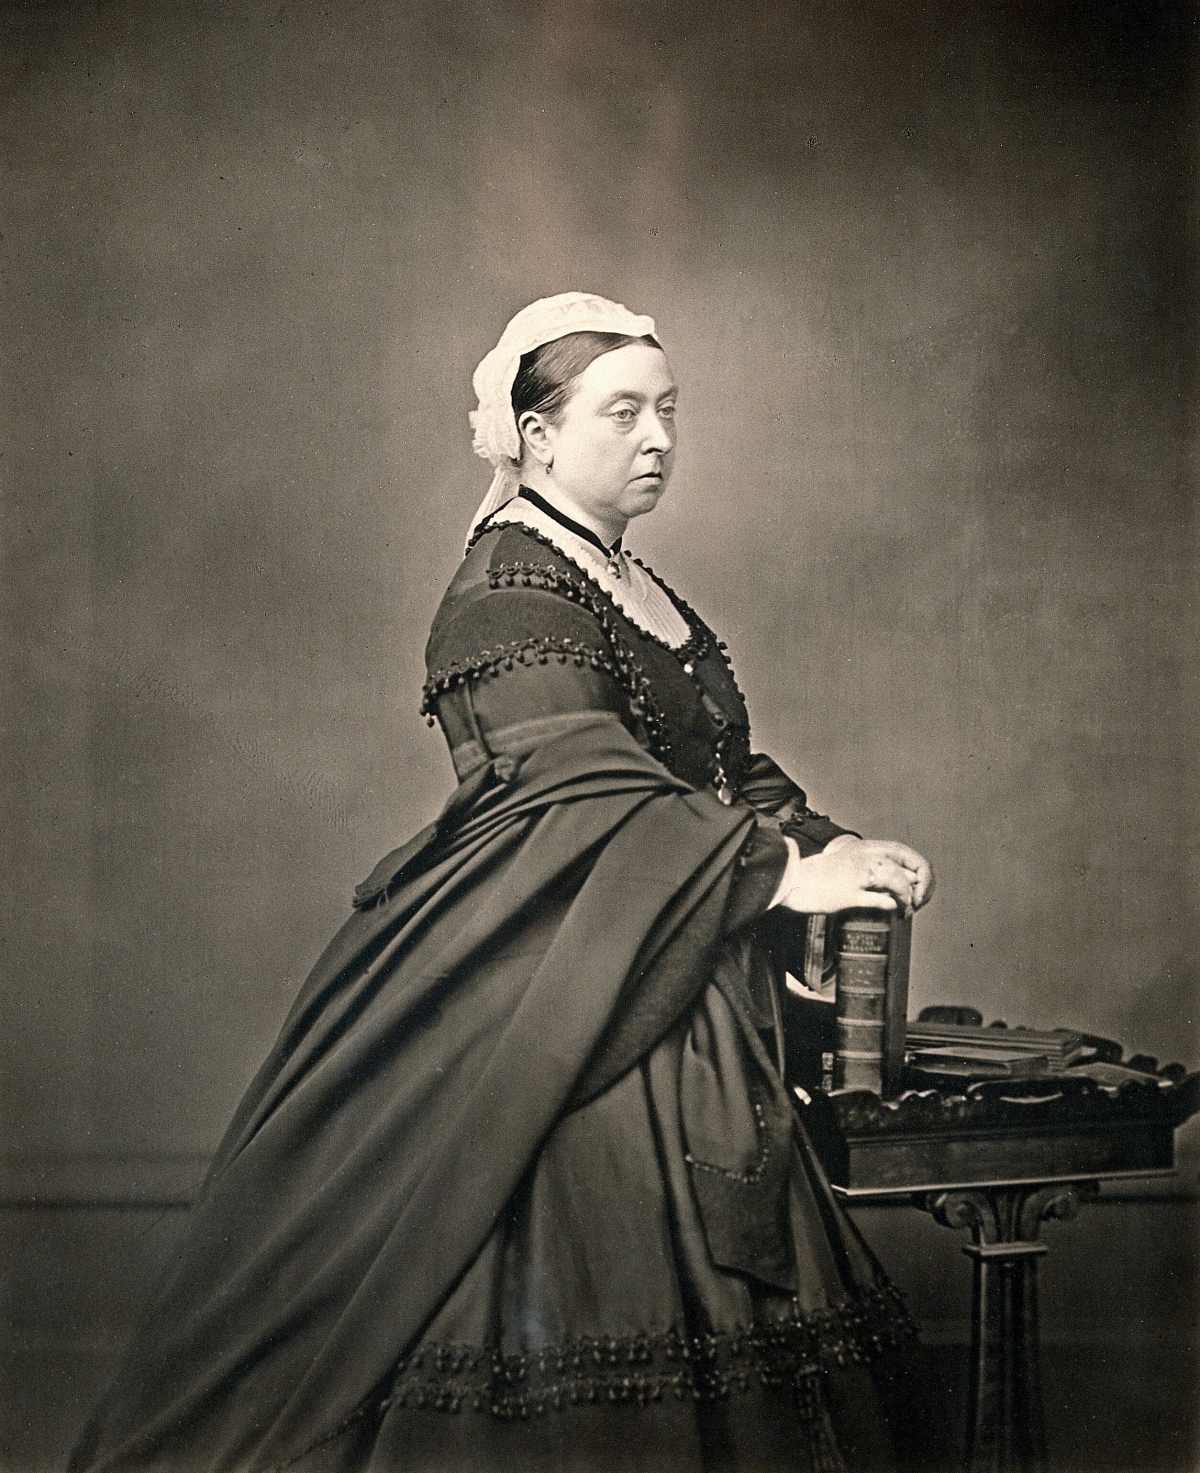 Queen Victoria 1870 portrait photograph